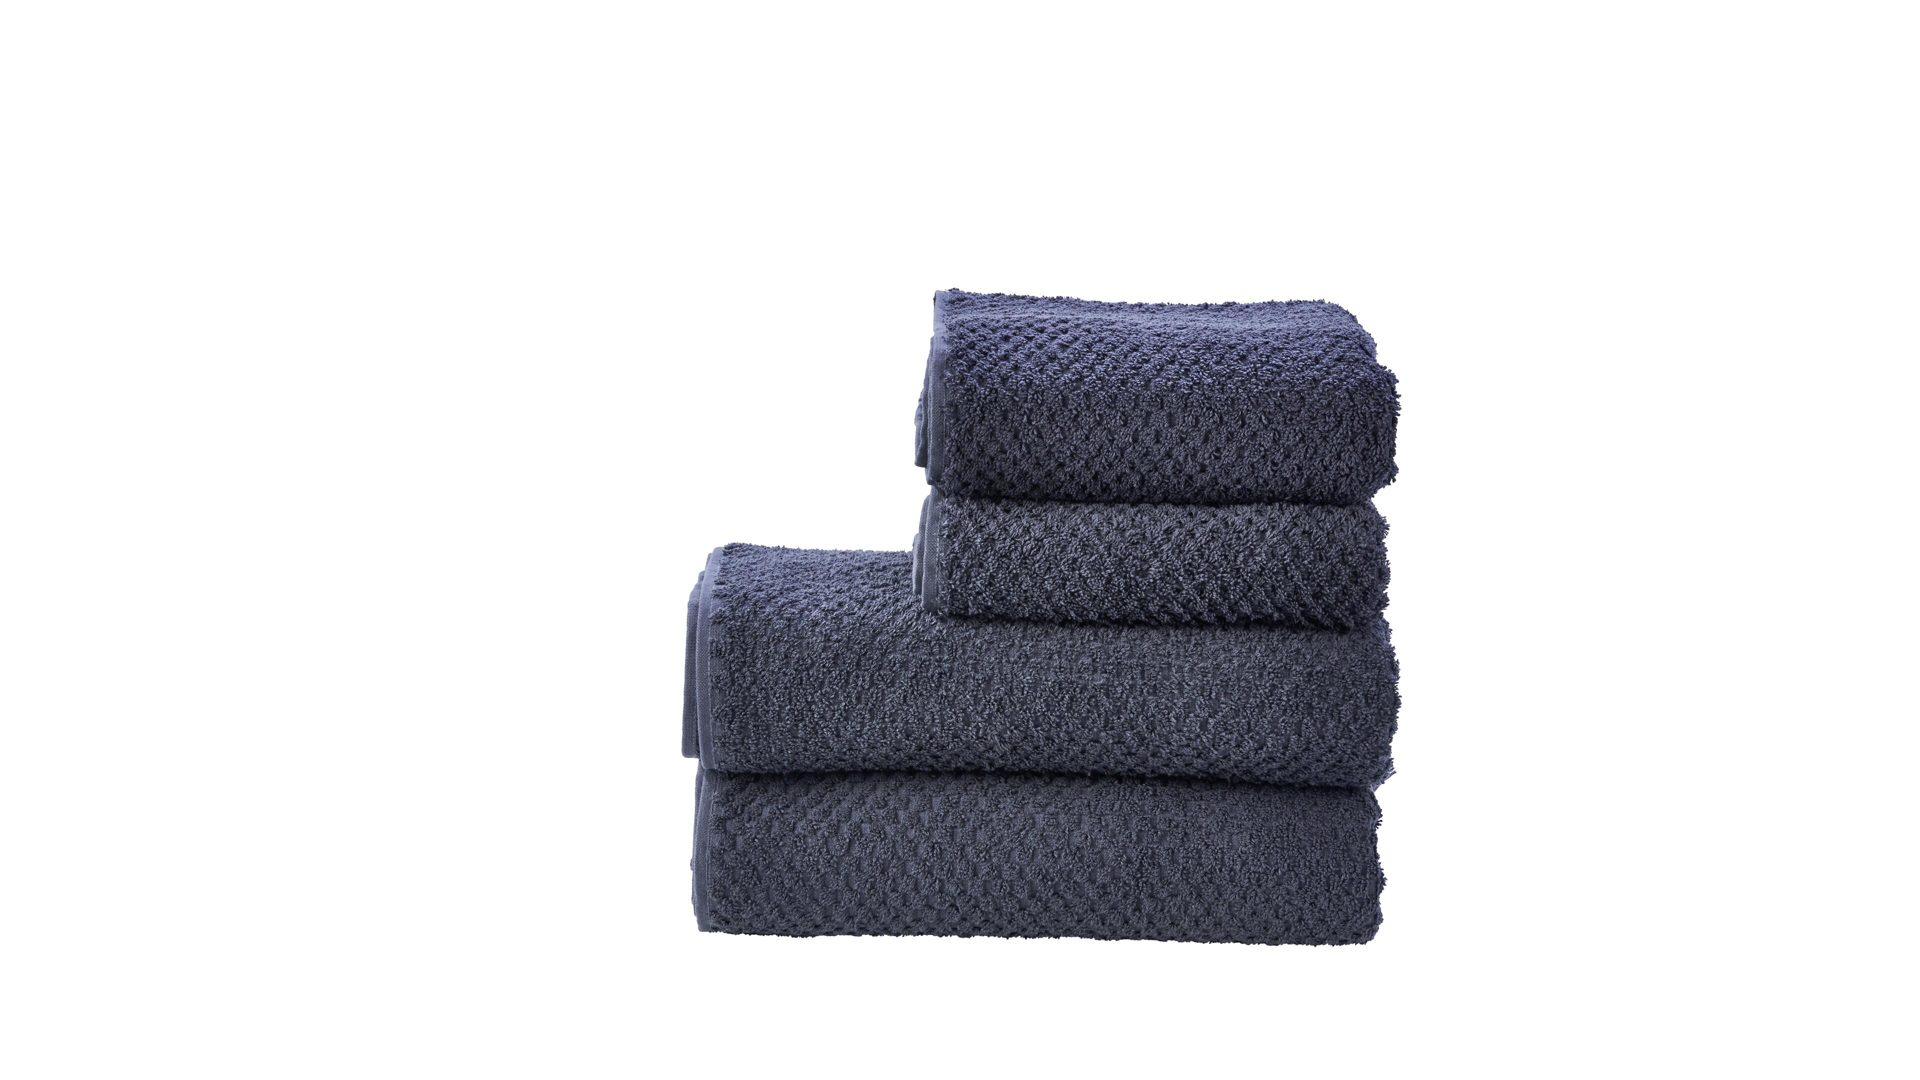 Handtuch-Set Done® be different aus Stoff in Anthrazit DONE® Handtuch-Set Provence Honeycomb anthrazitfarbene Baumwolle  – vierteilig